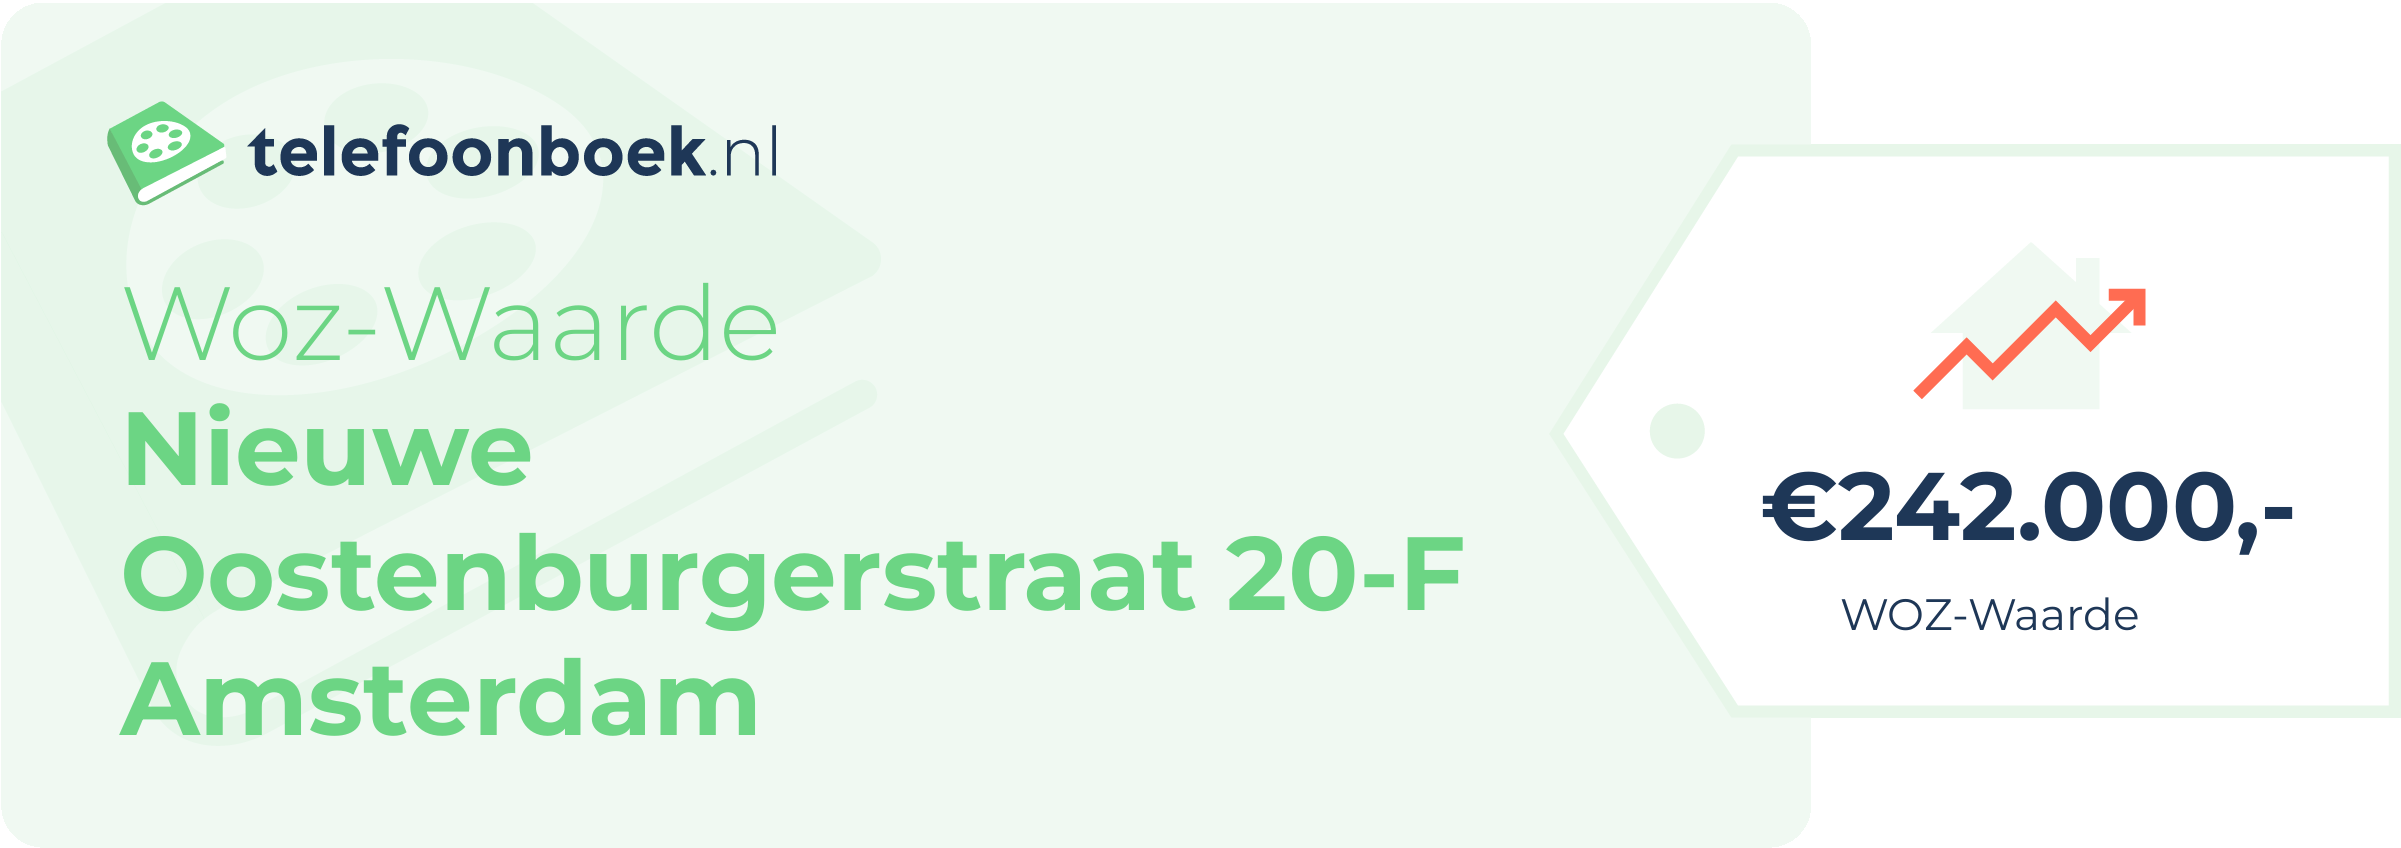 WOZ-waarde Nieuwe Oostenburgerstraat 20-F Amsterdam